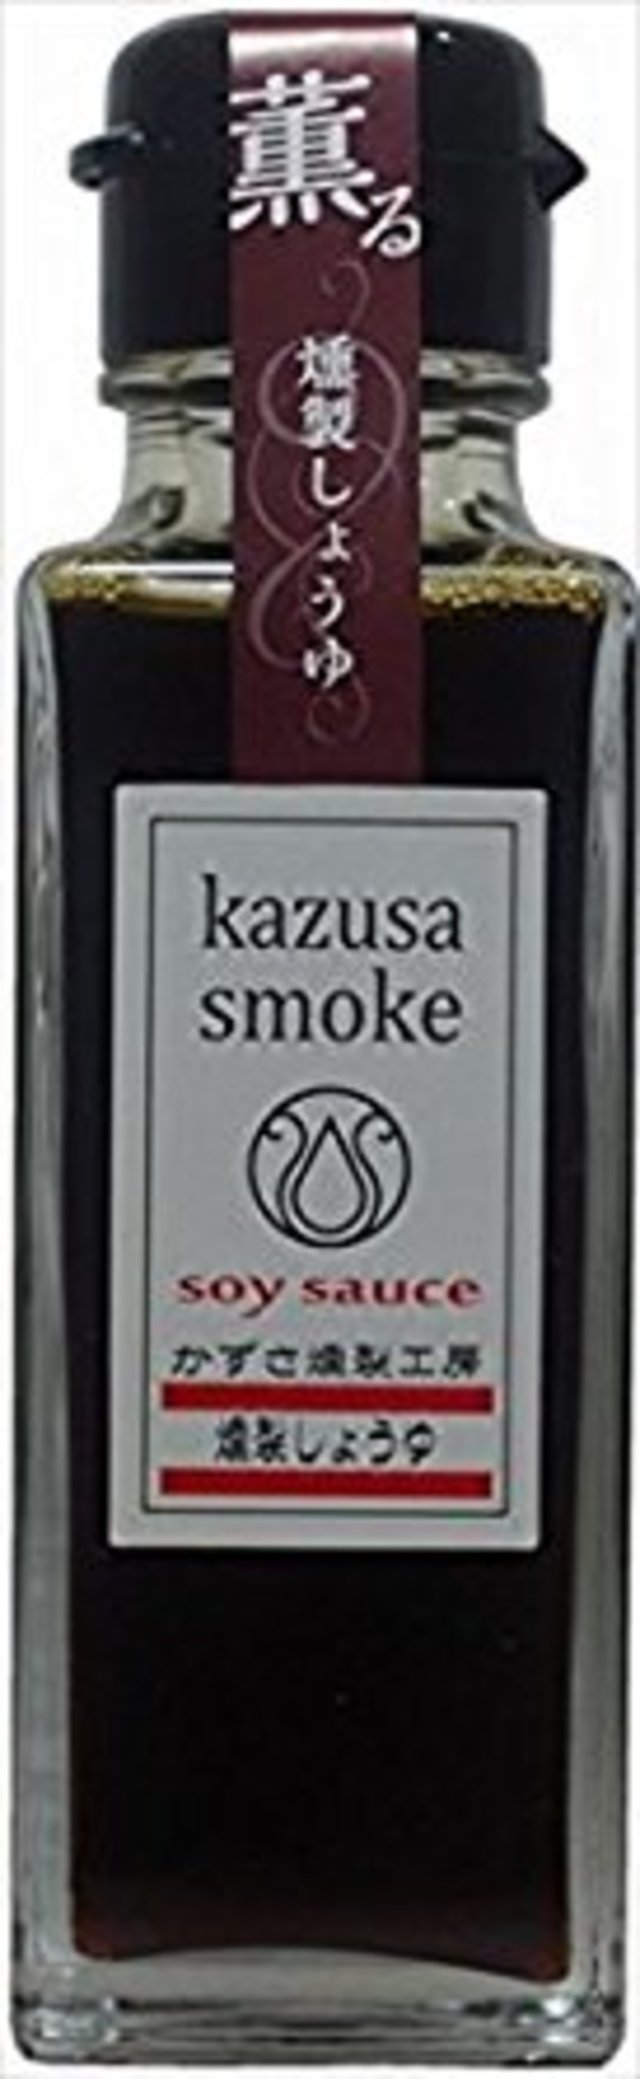 1位 老舗メーカーの醤油を桜チップで燻製(kazusa-smoke 燻製醤油)(角瓶100ml)